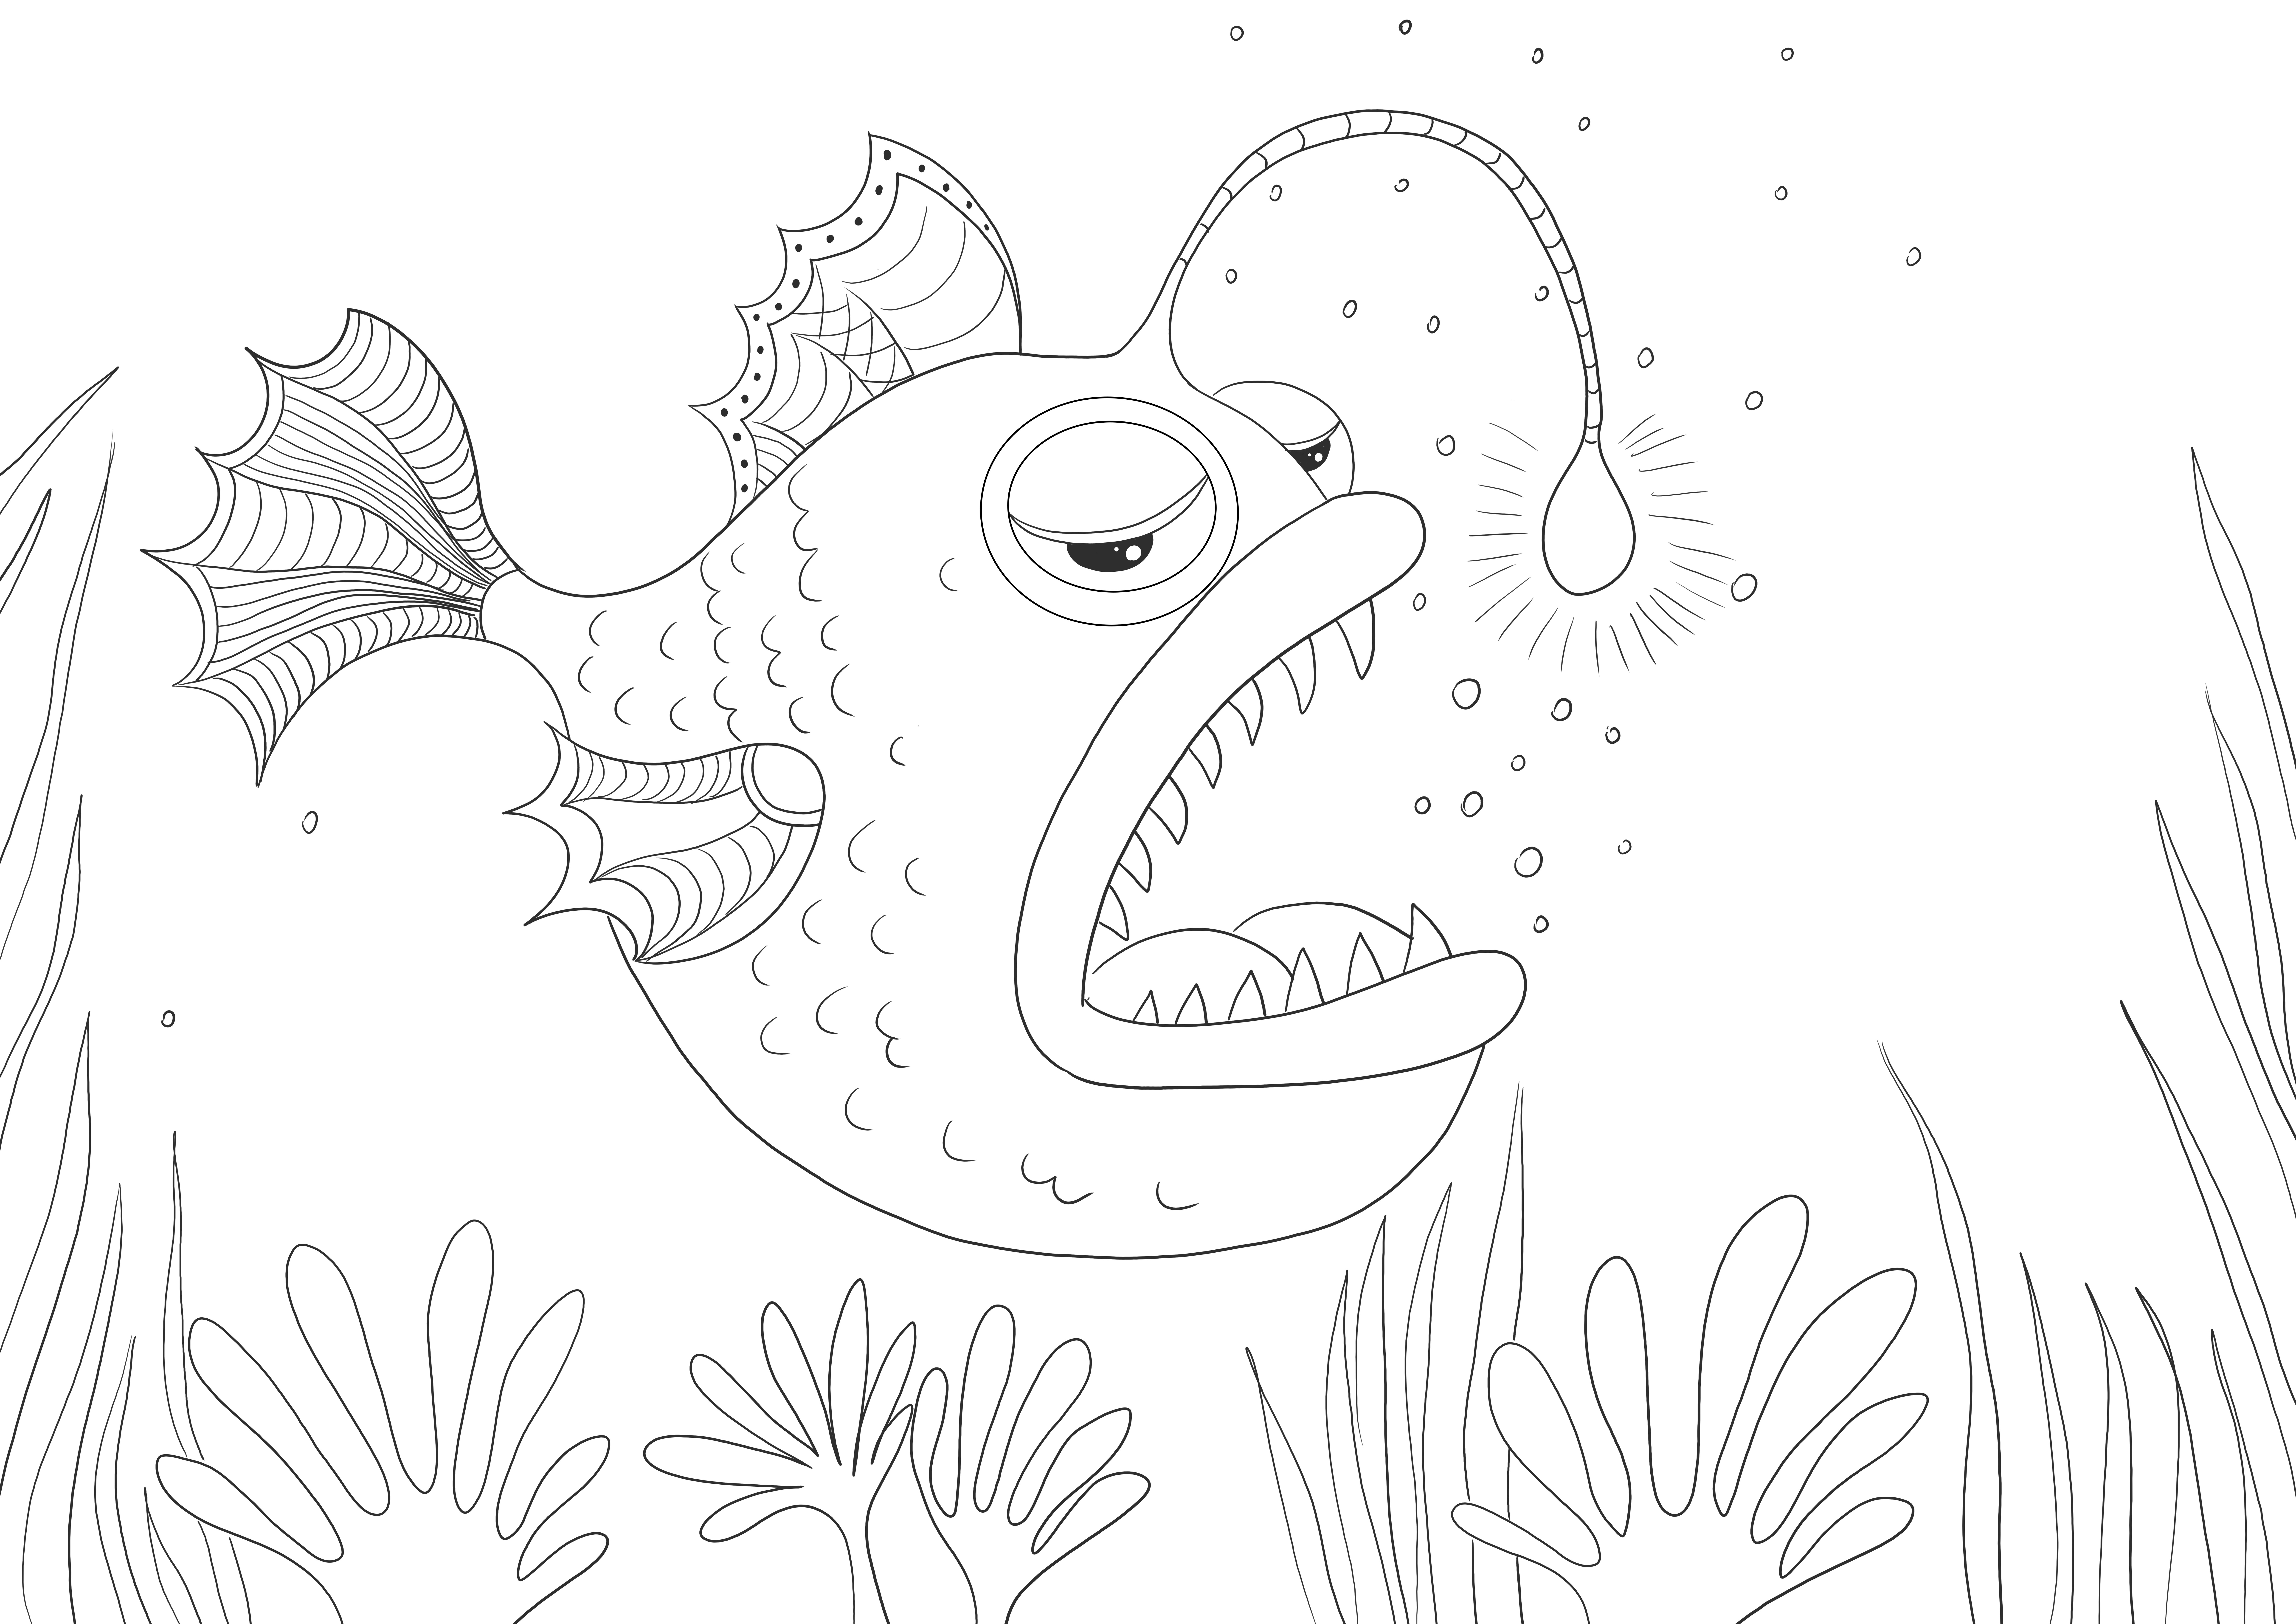 Fierce Anglerfish untuk diwarnai dan diunduh gratis untuk anak-anak